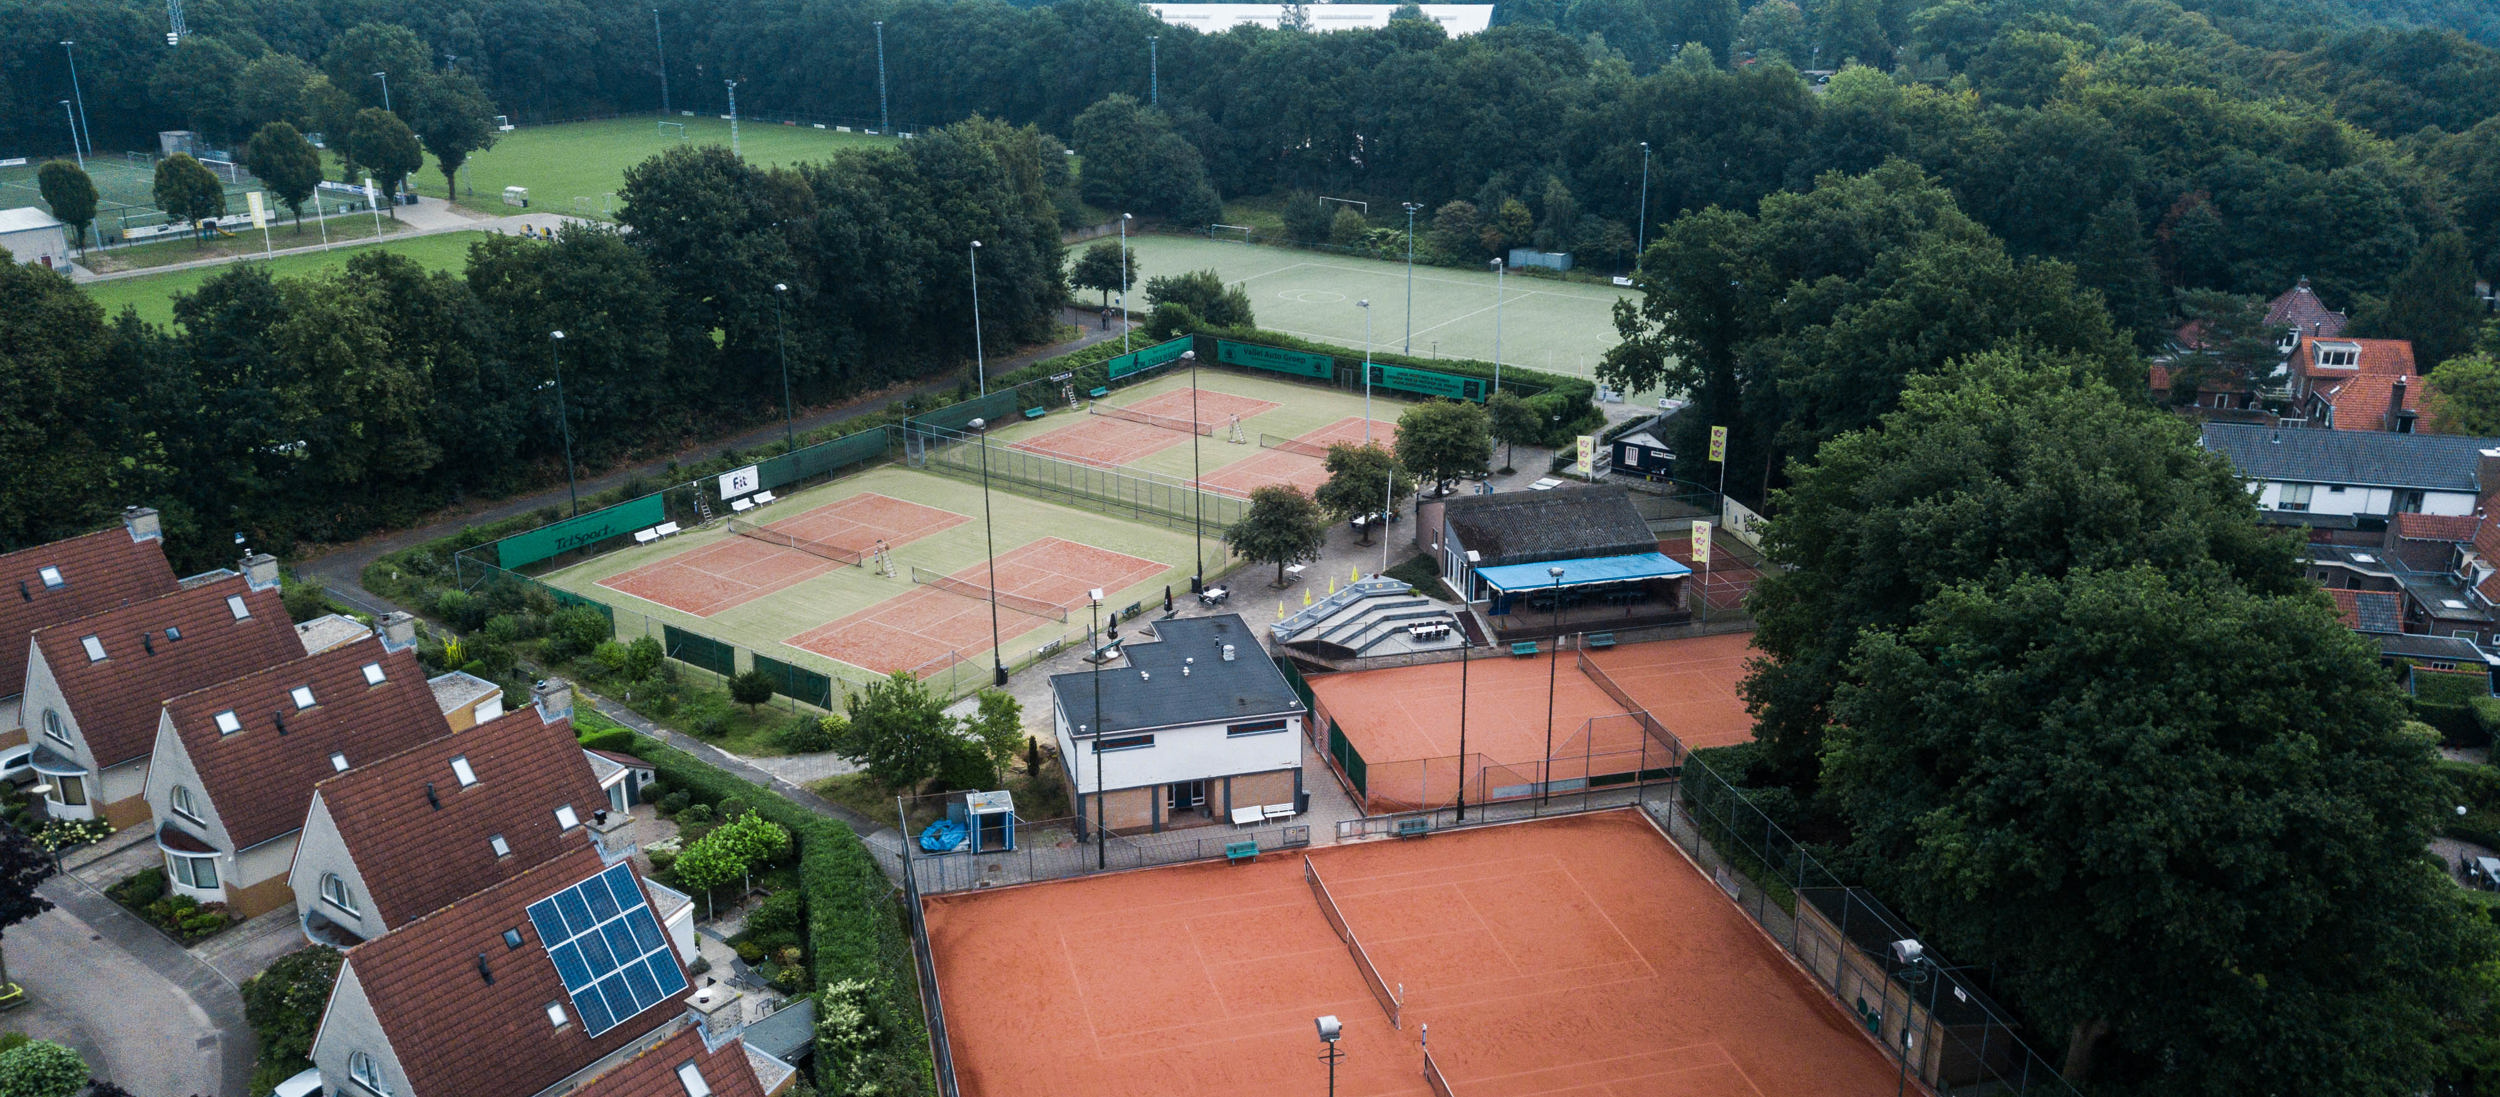 Tennisbanen bij huizen